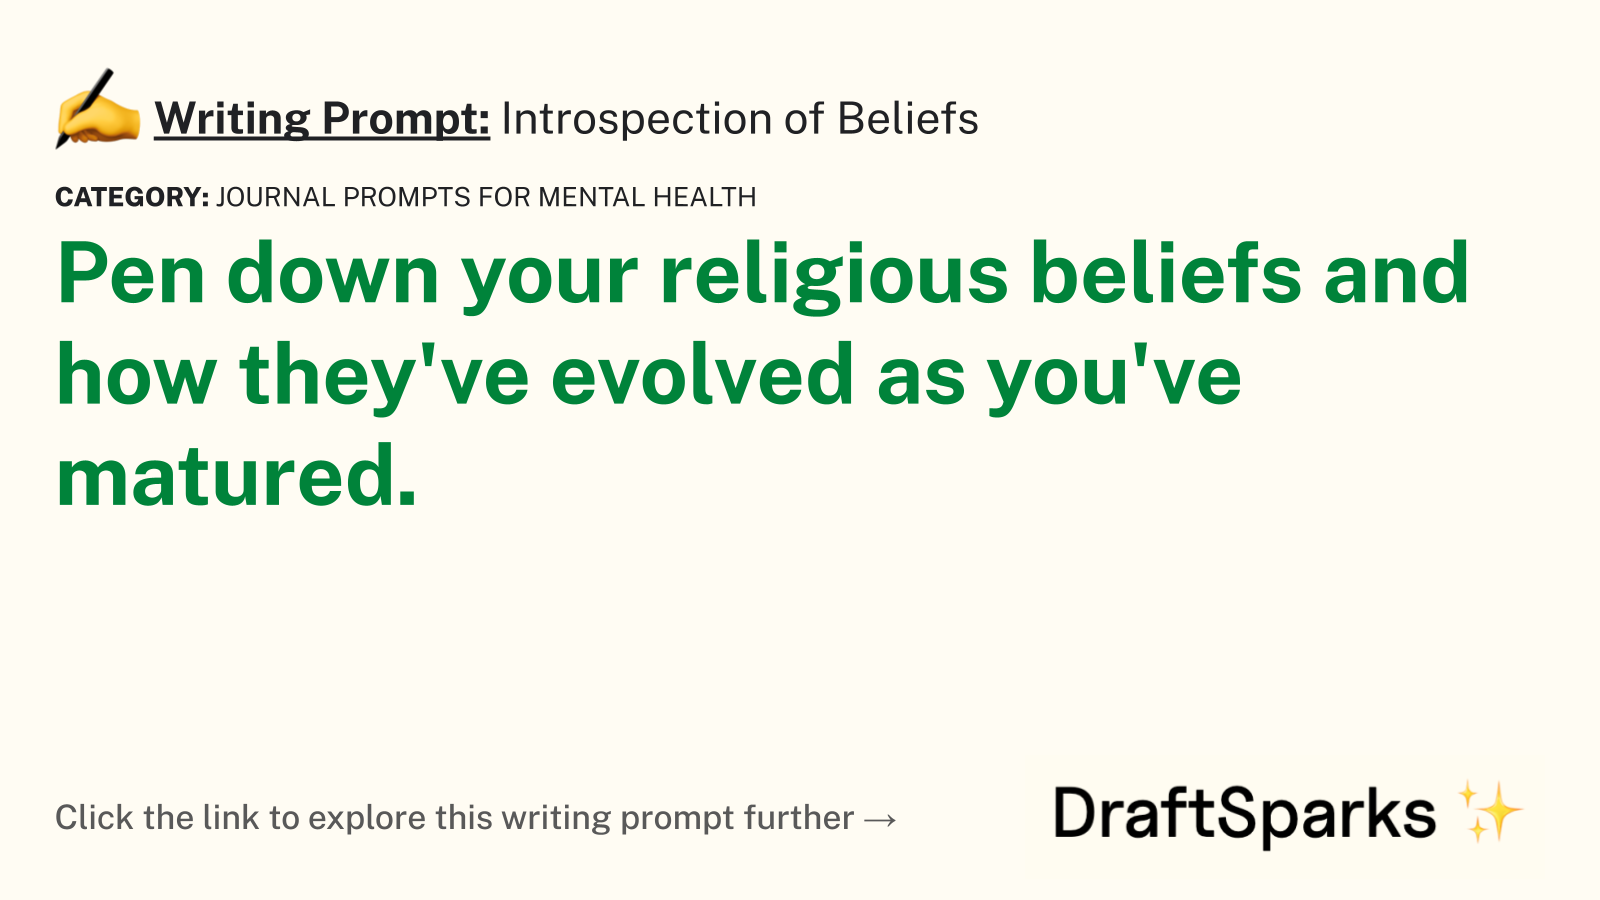 Introspection of Beliefs